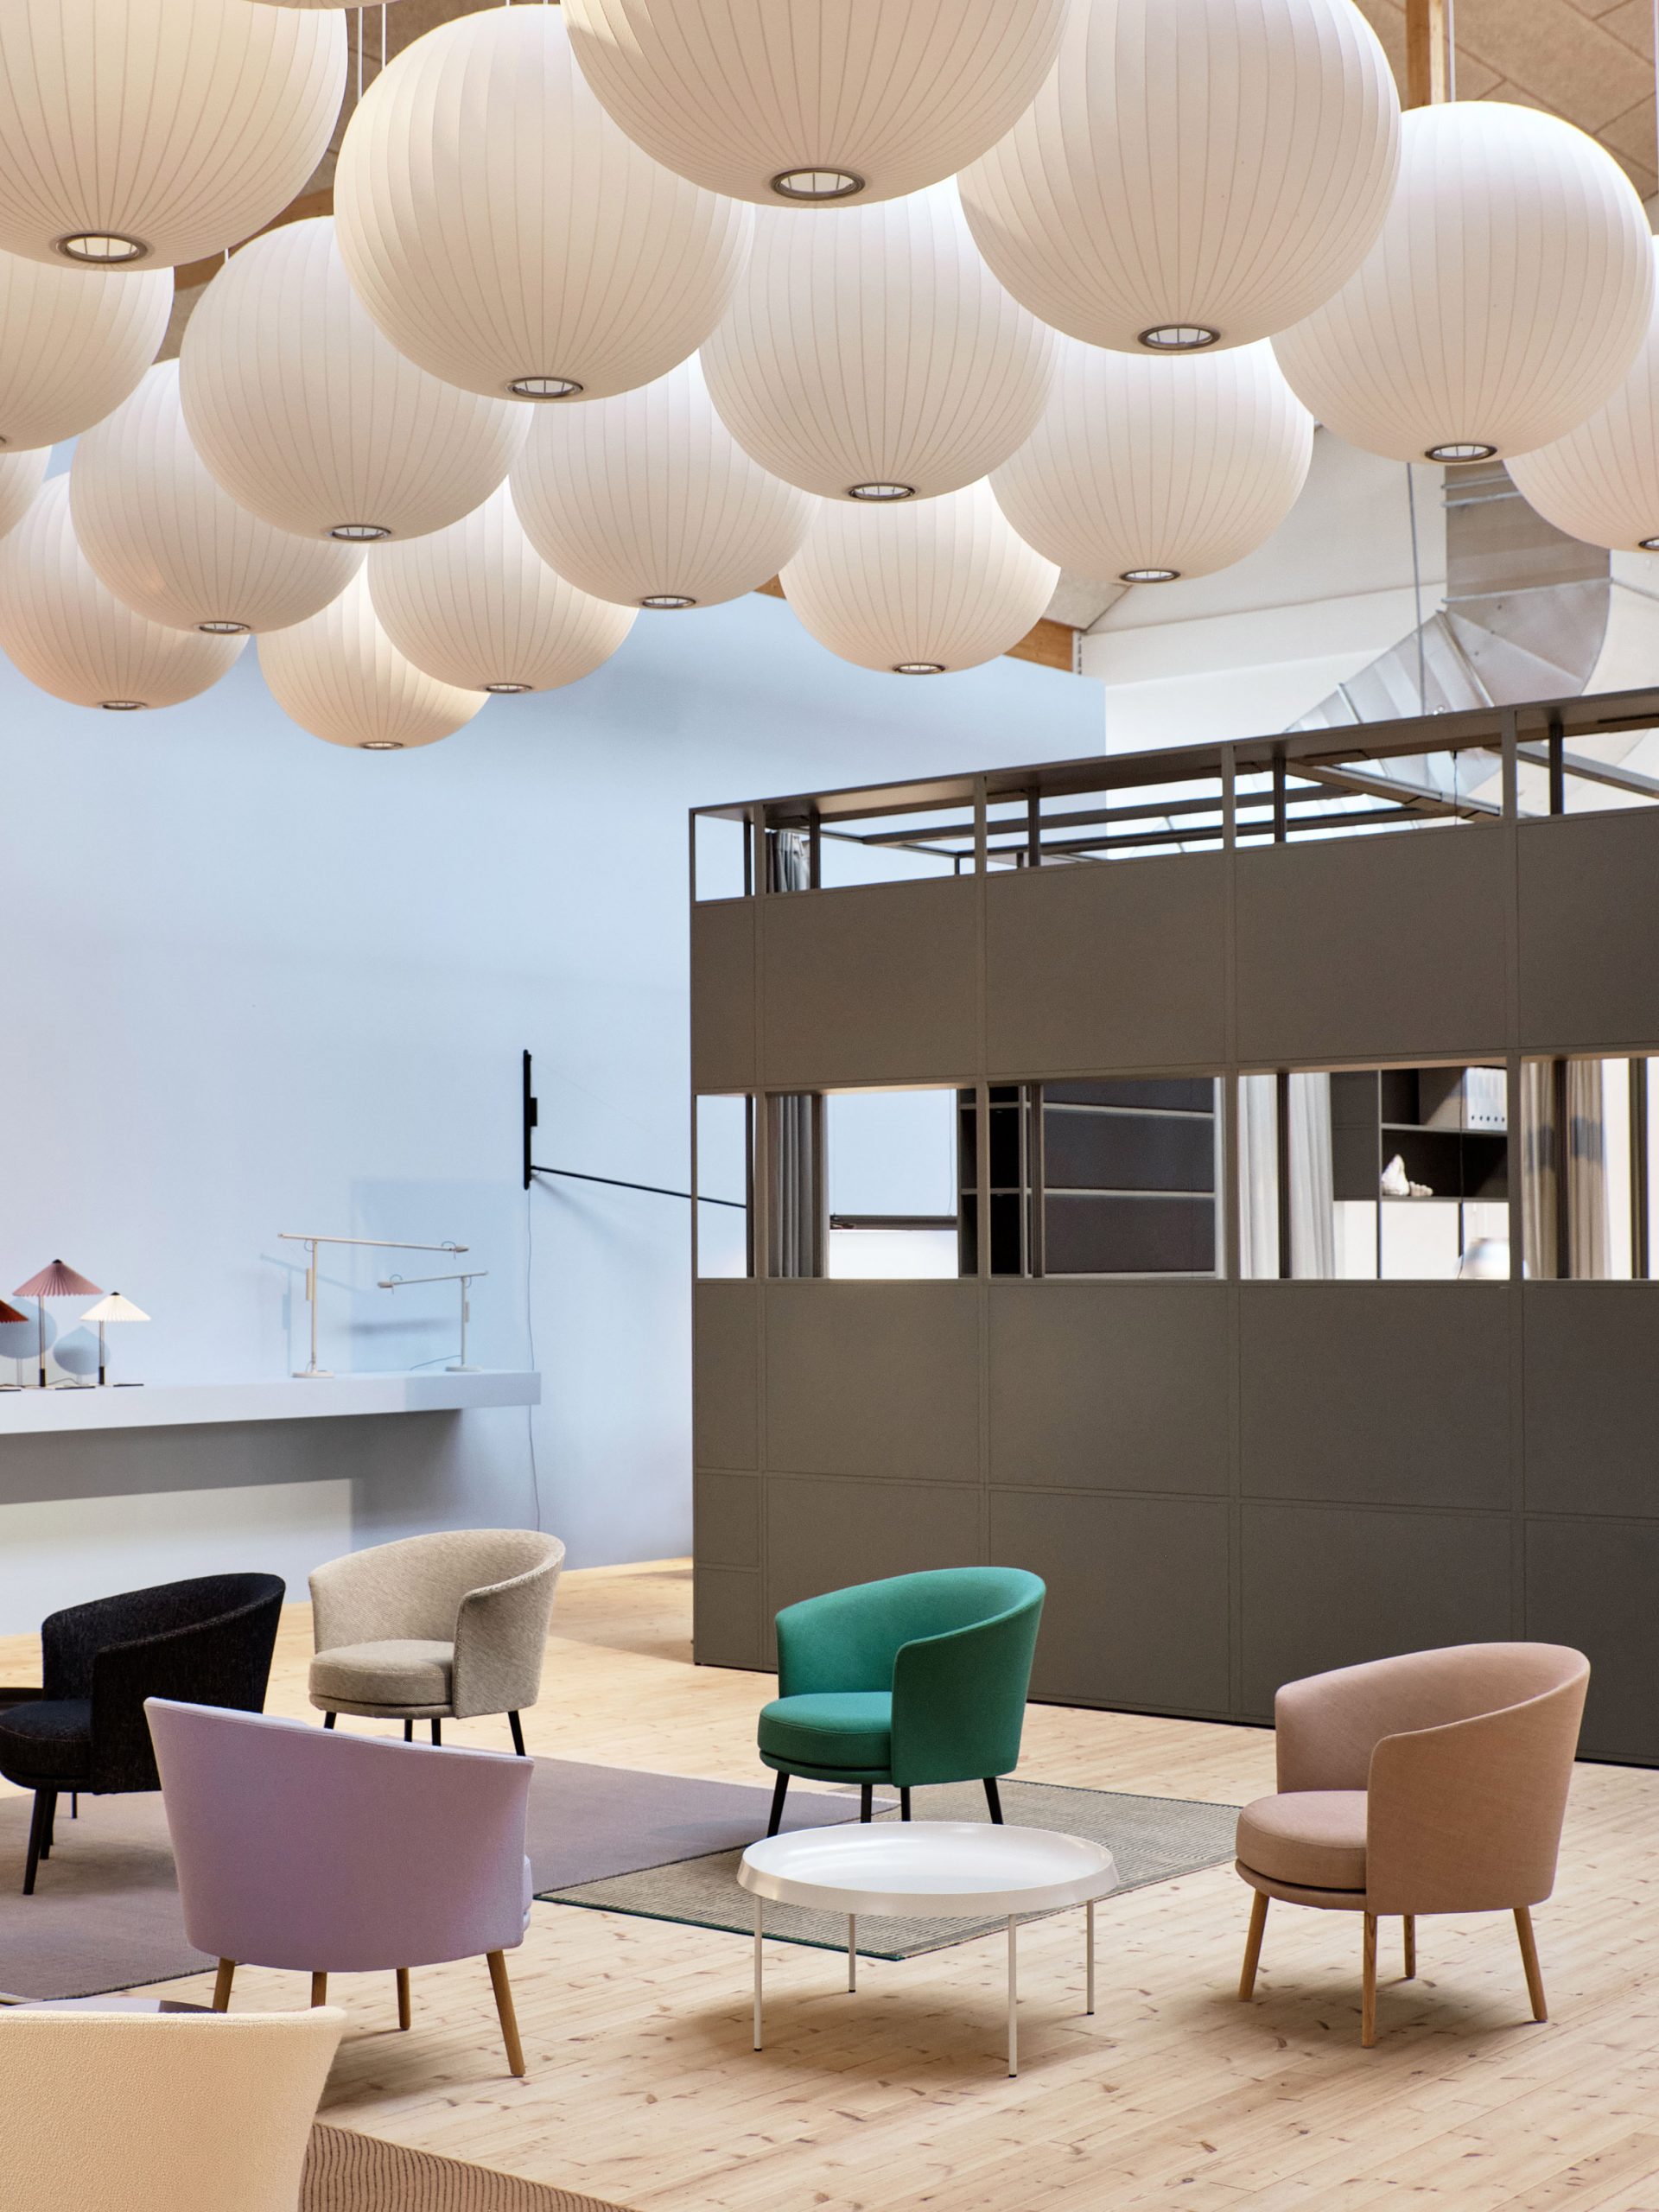 Hay's showroom at 3 Days of Design in Copenhagen